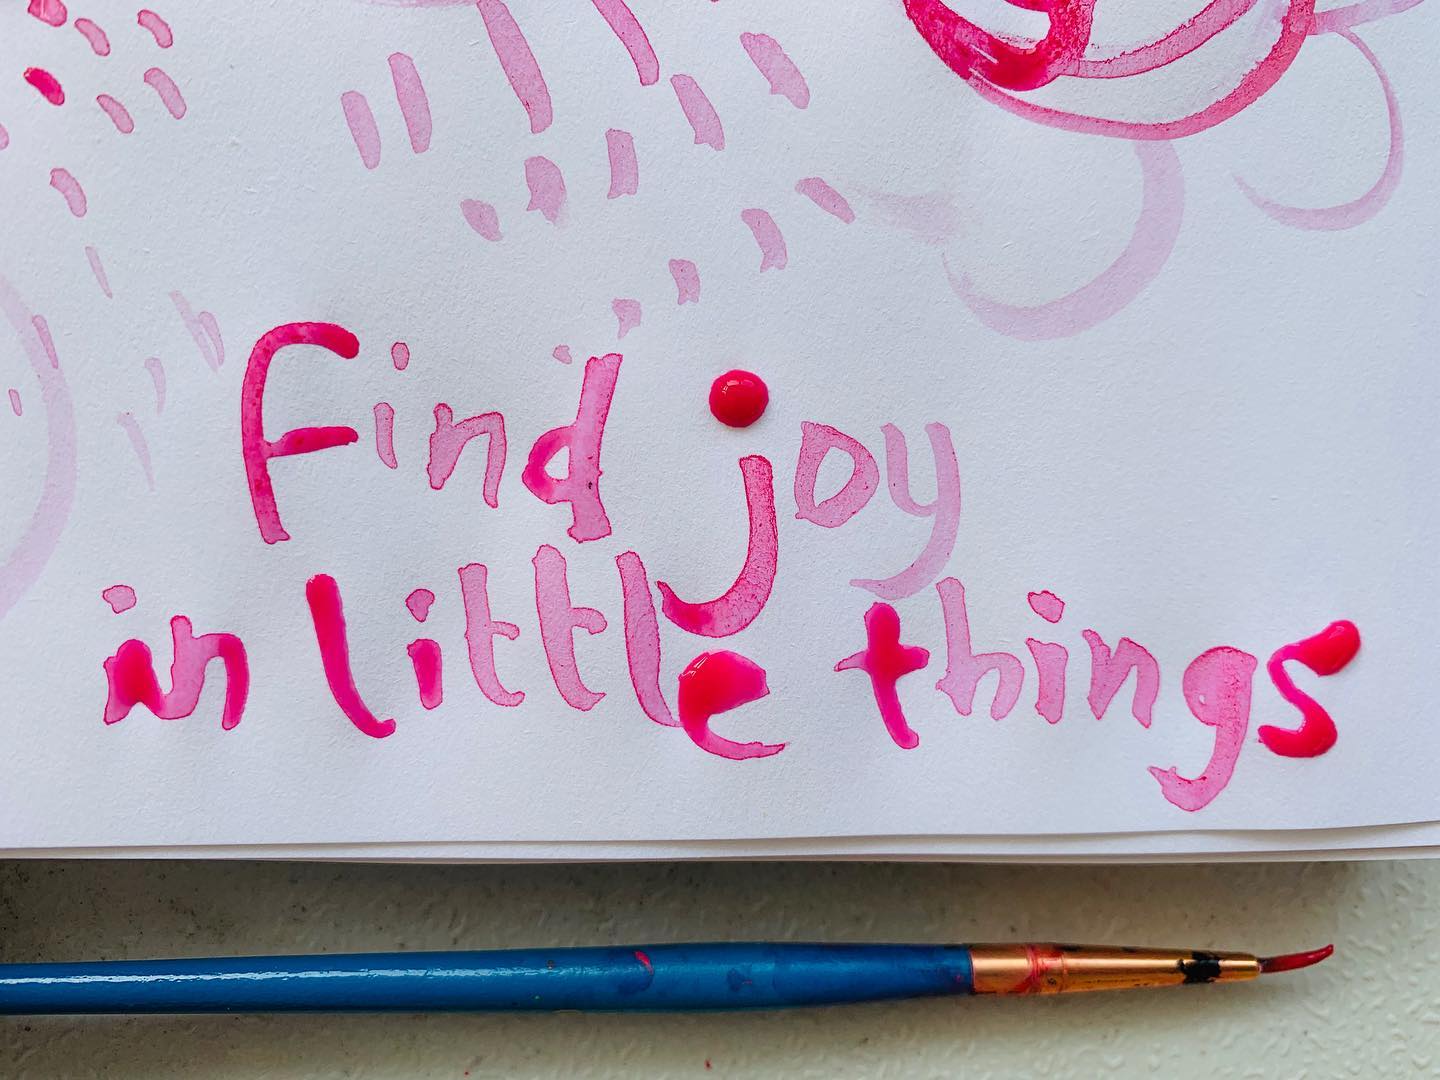 Find joy in little things...